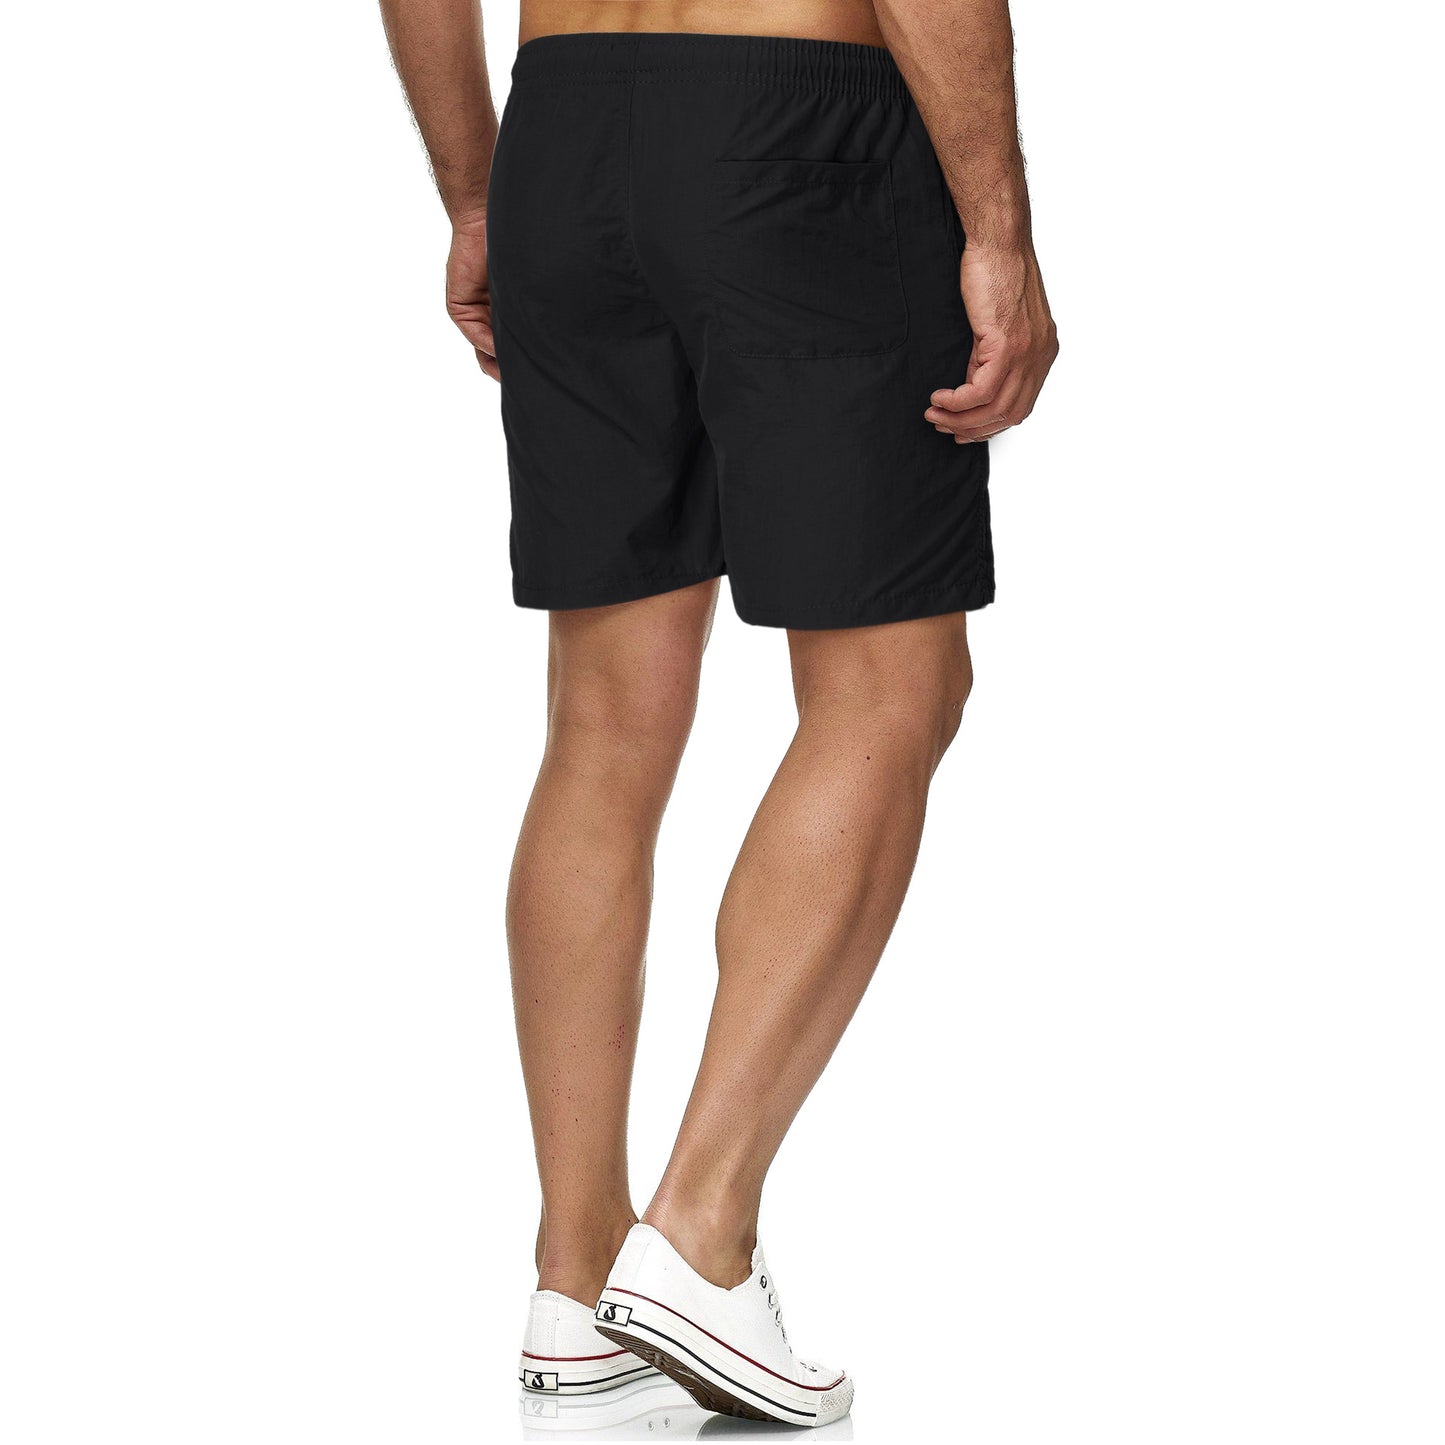 Men's Summer Beach Waterproof Shorts